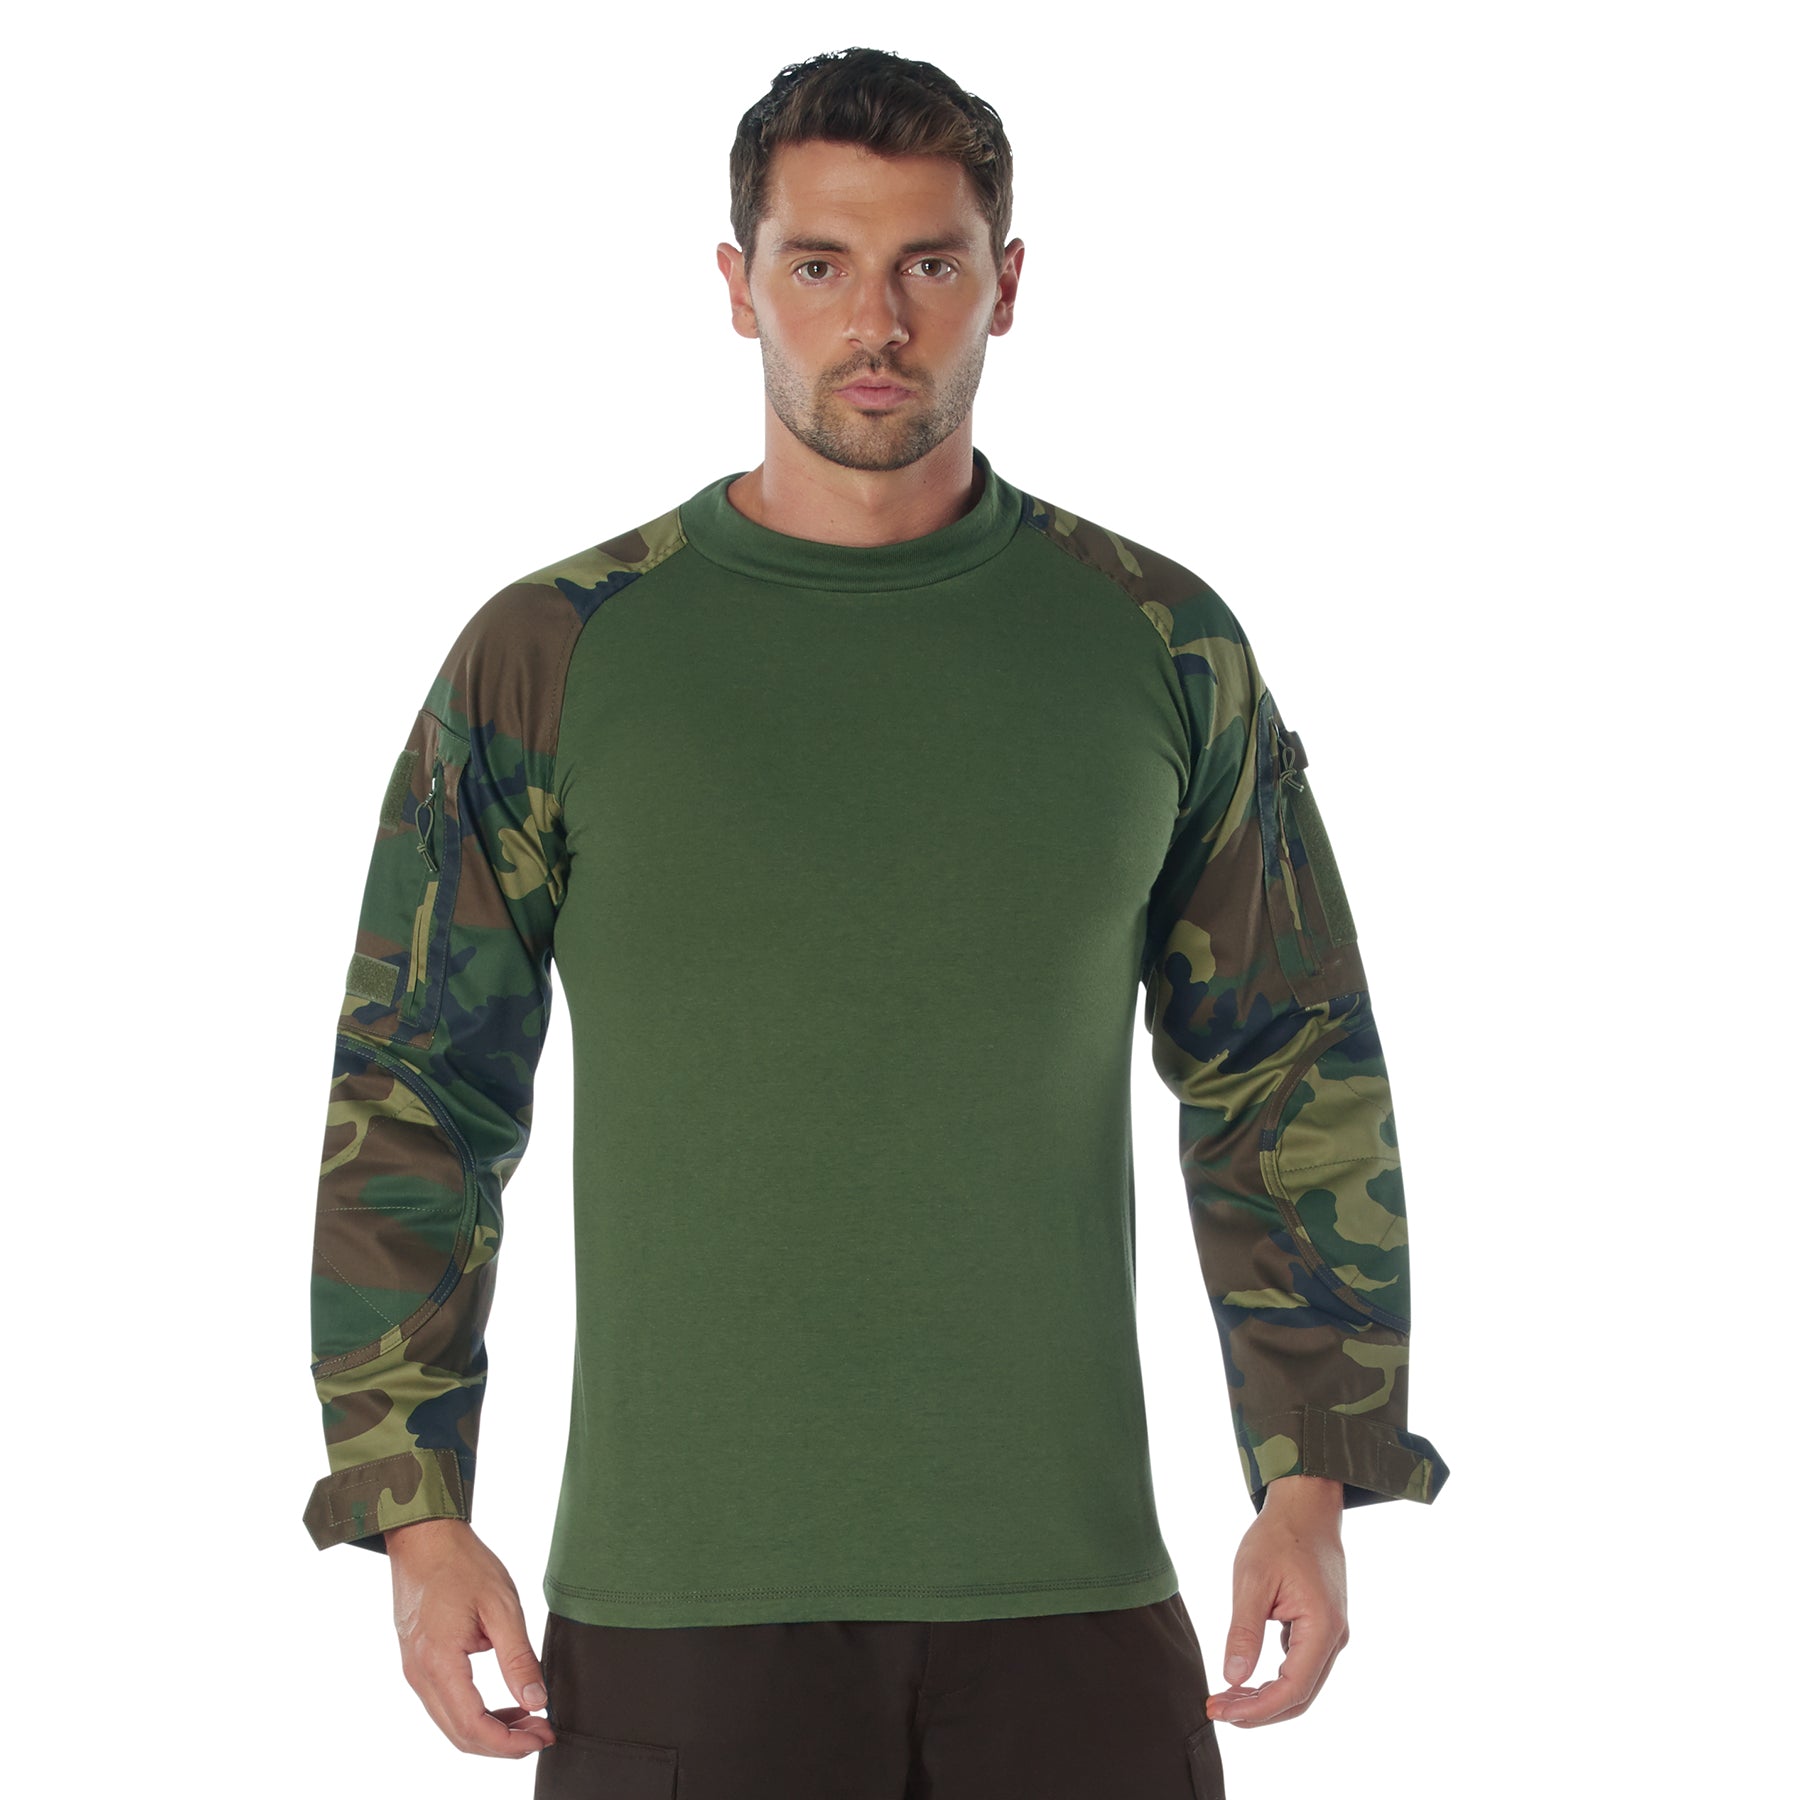 Camo Poly/Cotton Tactical Combat Shirts Woodland Camo